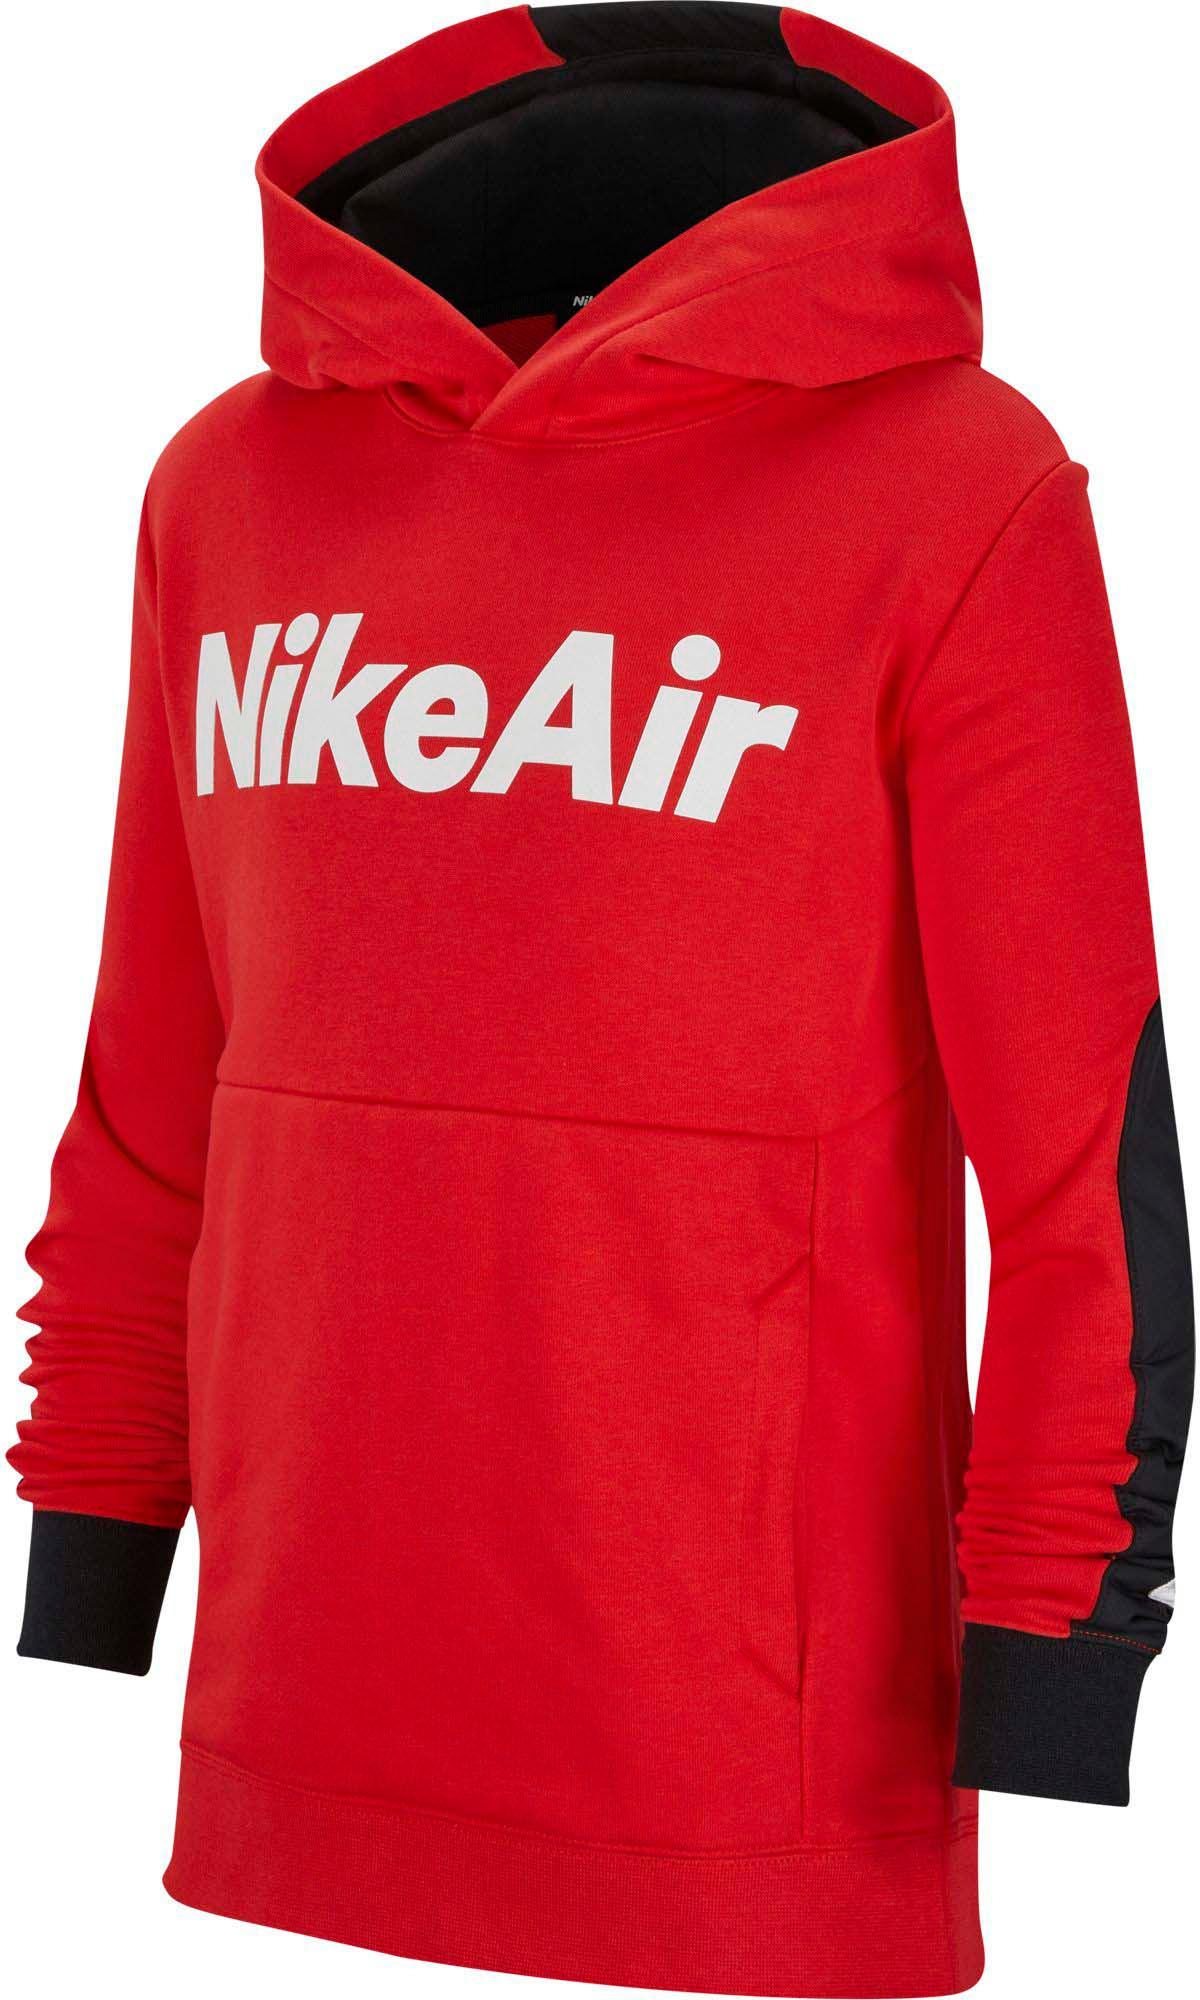 nike air hoodie red white black